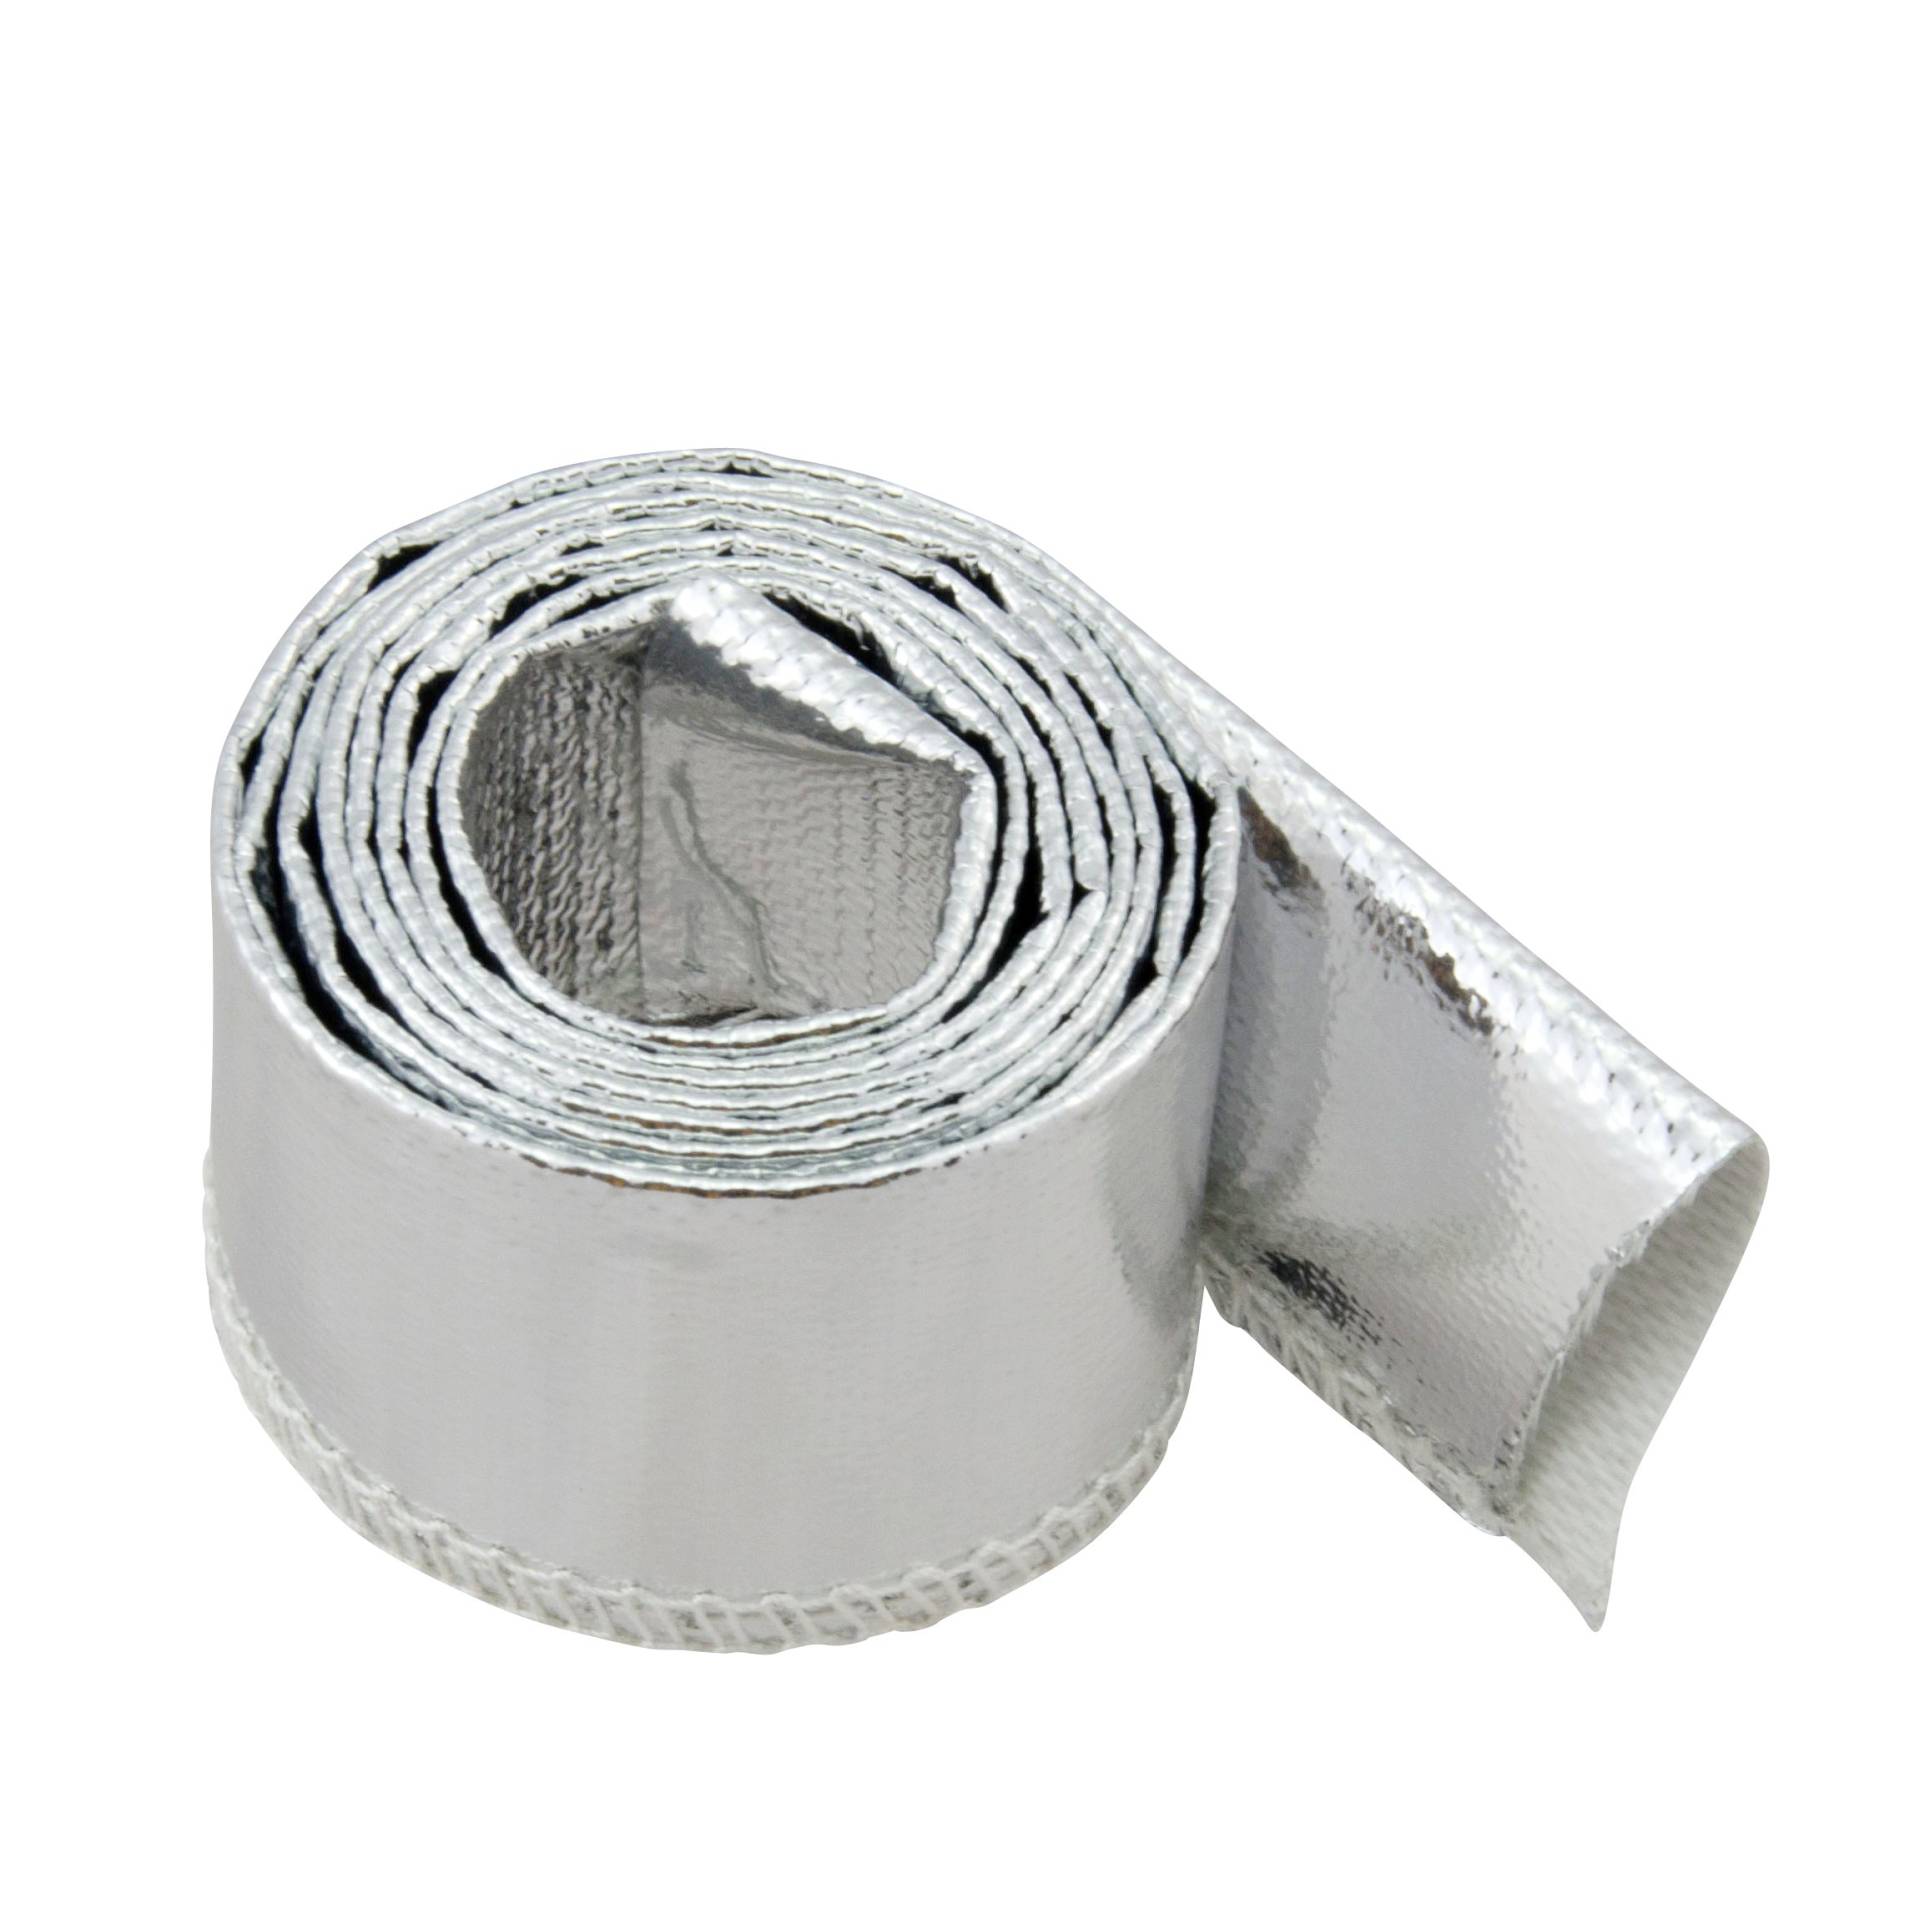 1m Aluminium Hitzeschutzschlauch - 12mm Innendurchmesser für Leitungen, Schläuche und Kabelbäume - Hitzebeständig bis 550°C von DL-Racing